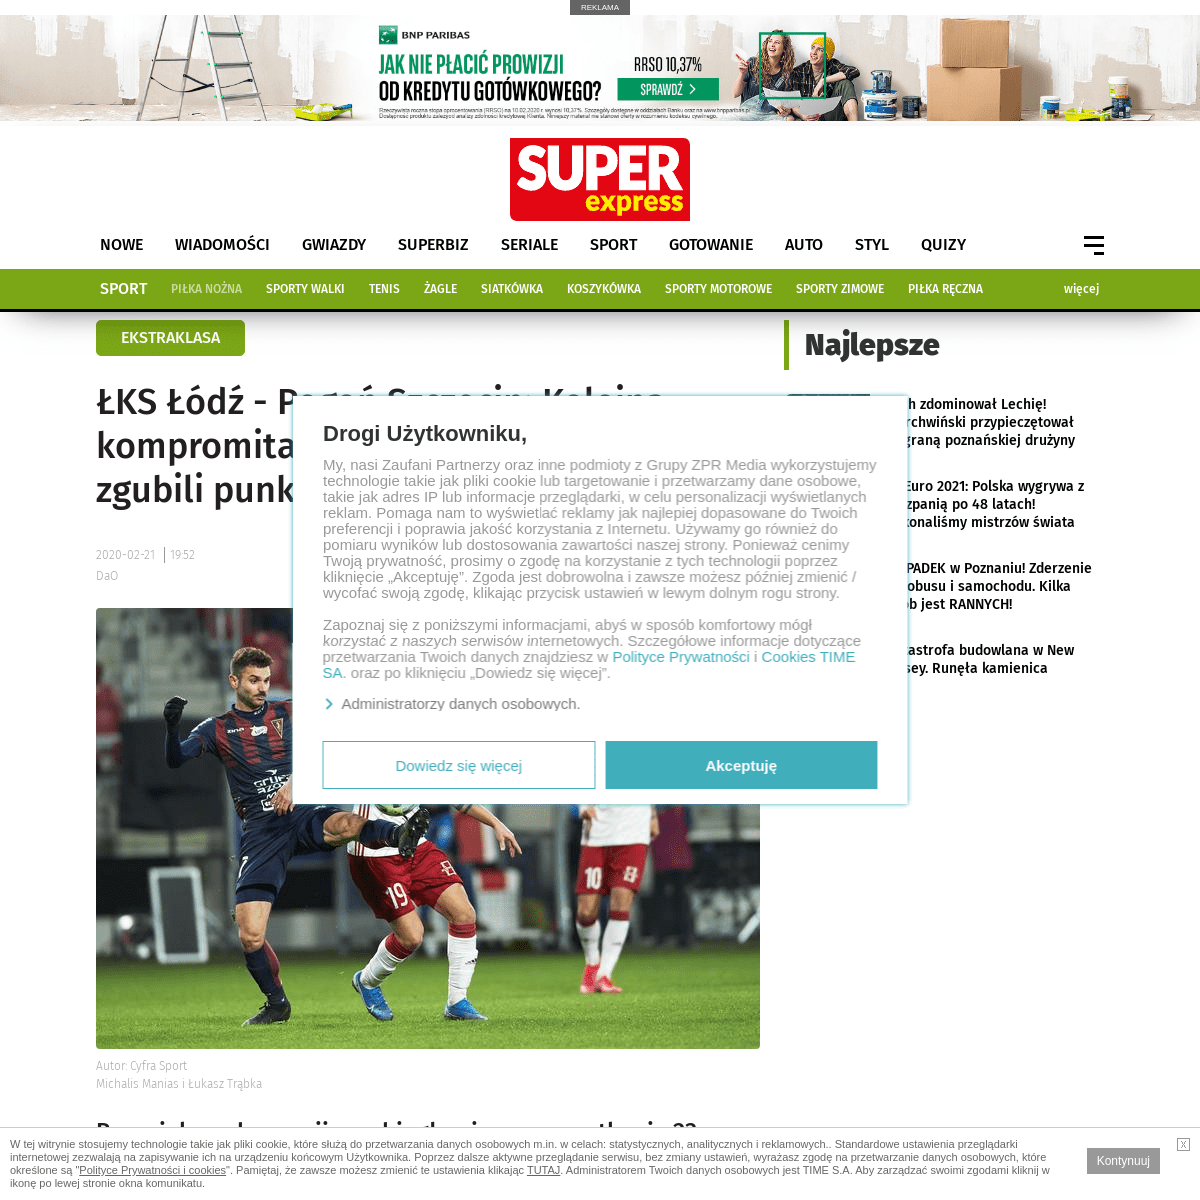 A complete backup of sport.se.pl/pilka-nozna/ekstraklasa/lks-lodz-pogon-szczecin-kolejna-kompromitacja-przy-karnym-portowcy-zgub